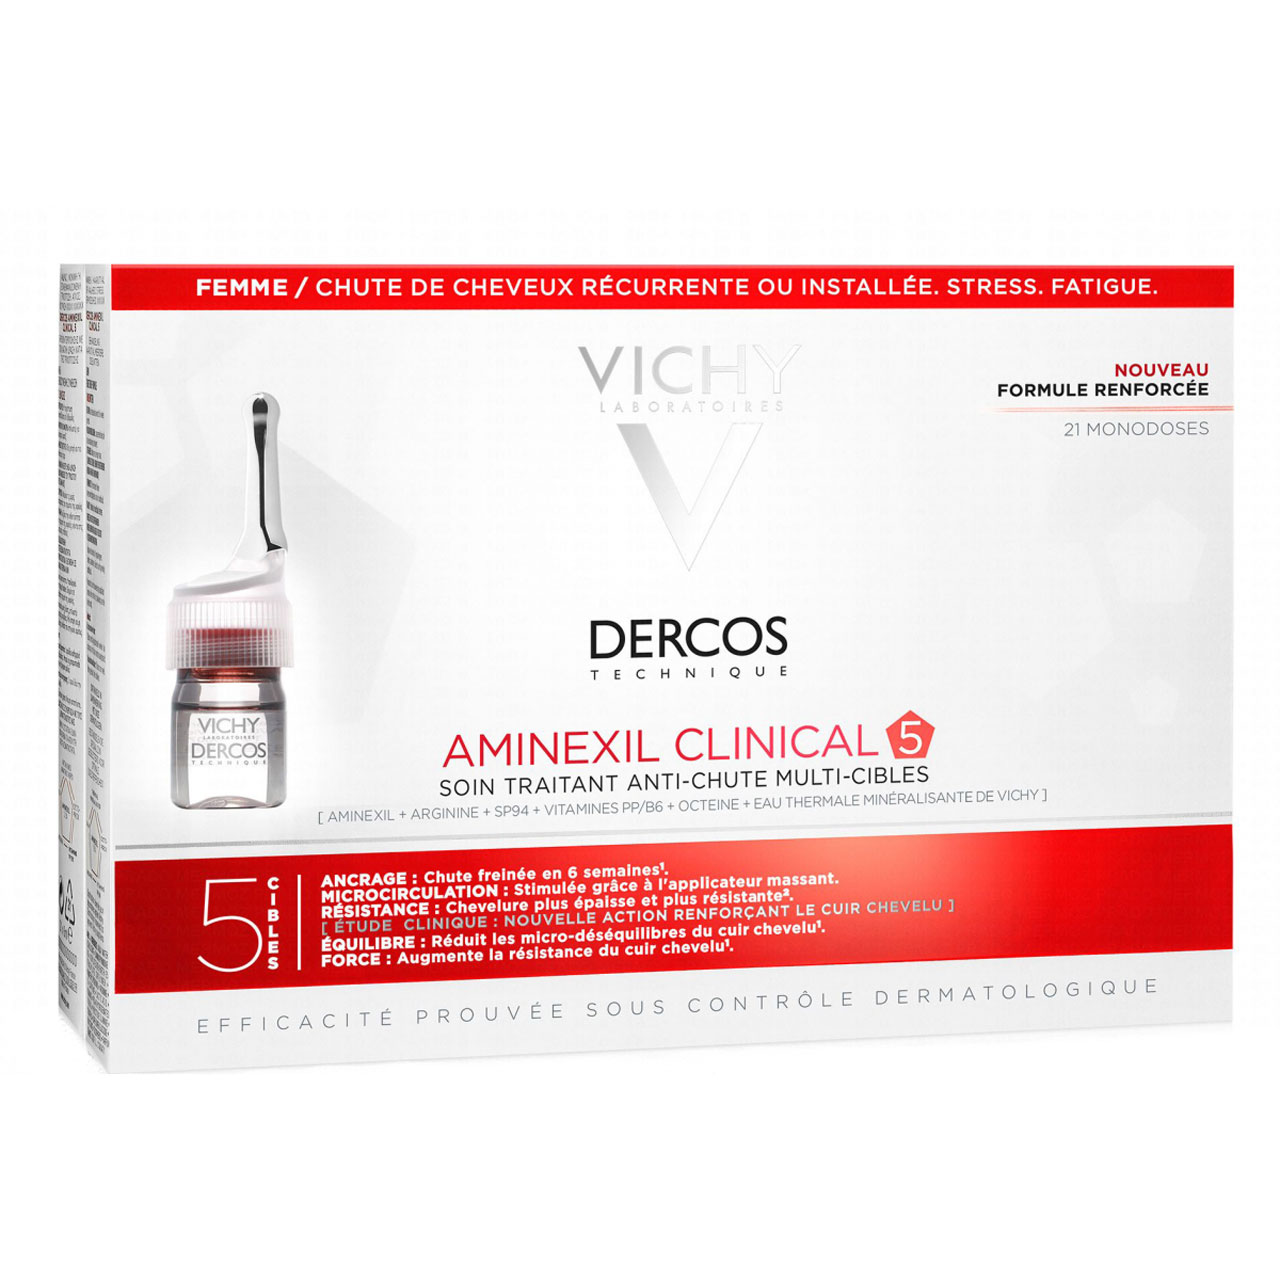 محلول کنترل کننده ریزش مو زنانه ویشی سری Dercos مدل Aminexil Clinical 5 حجم 6 میلی لیتر بسته 21 عددی